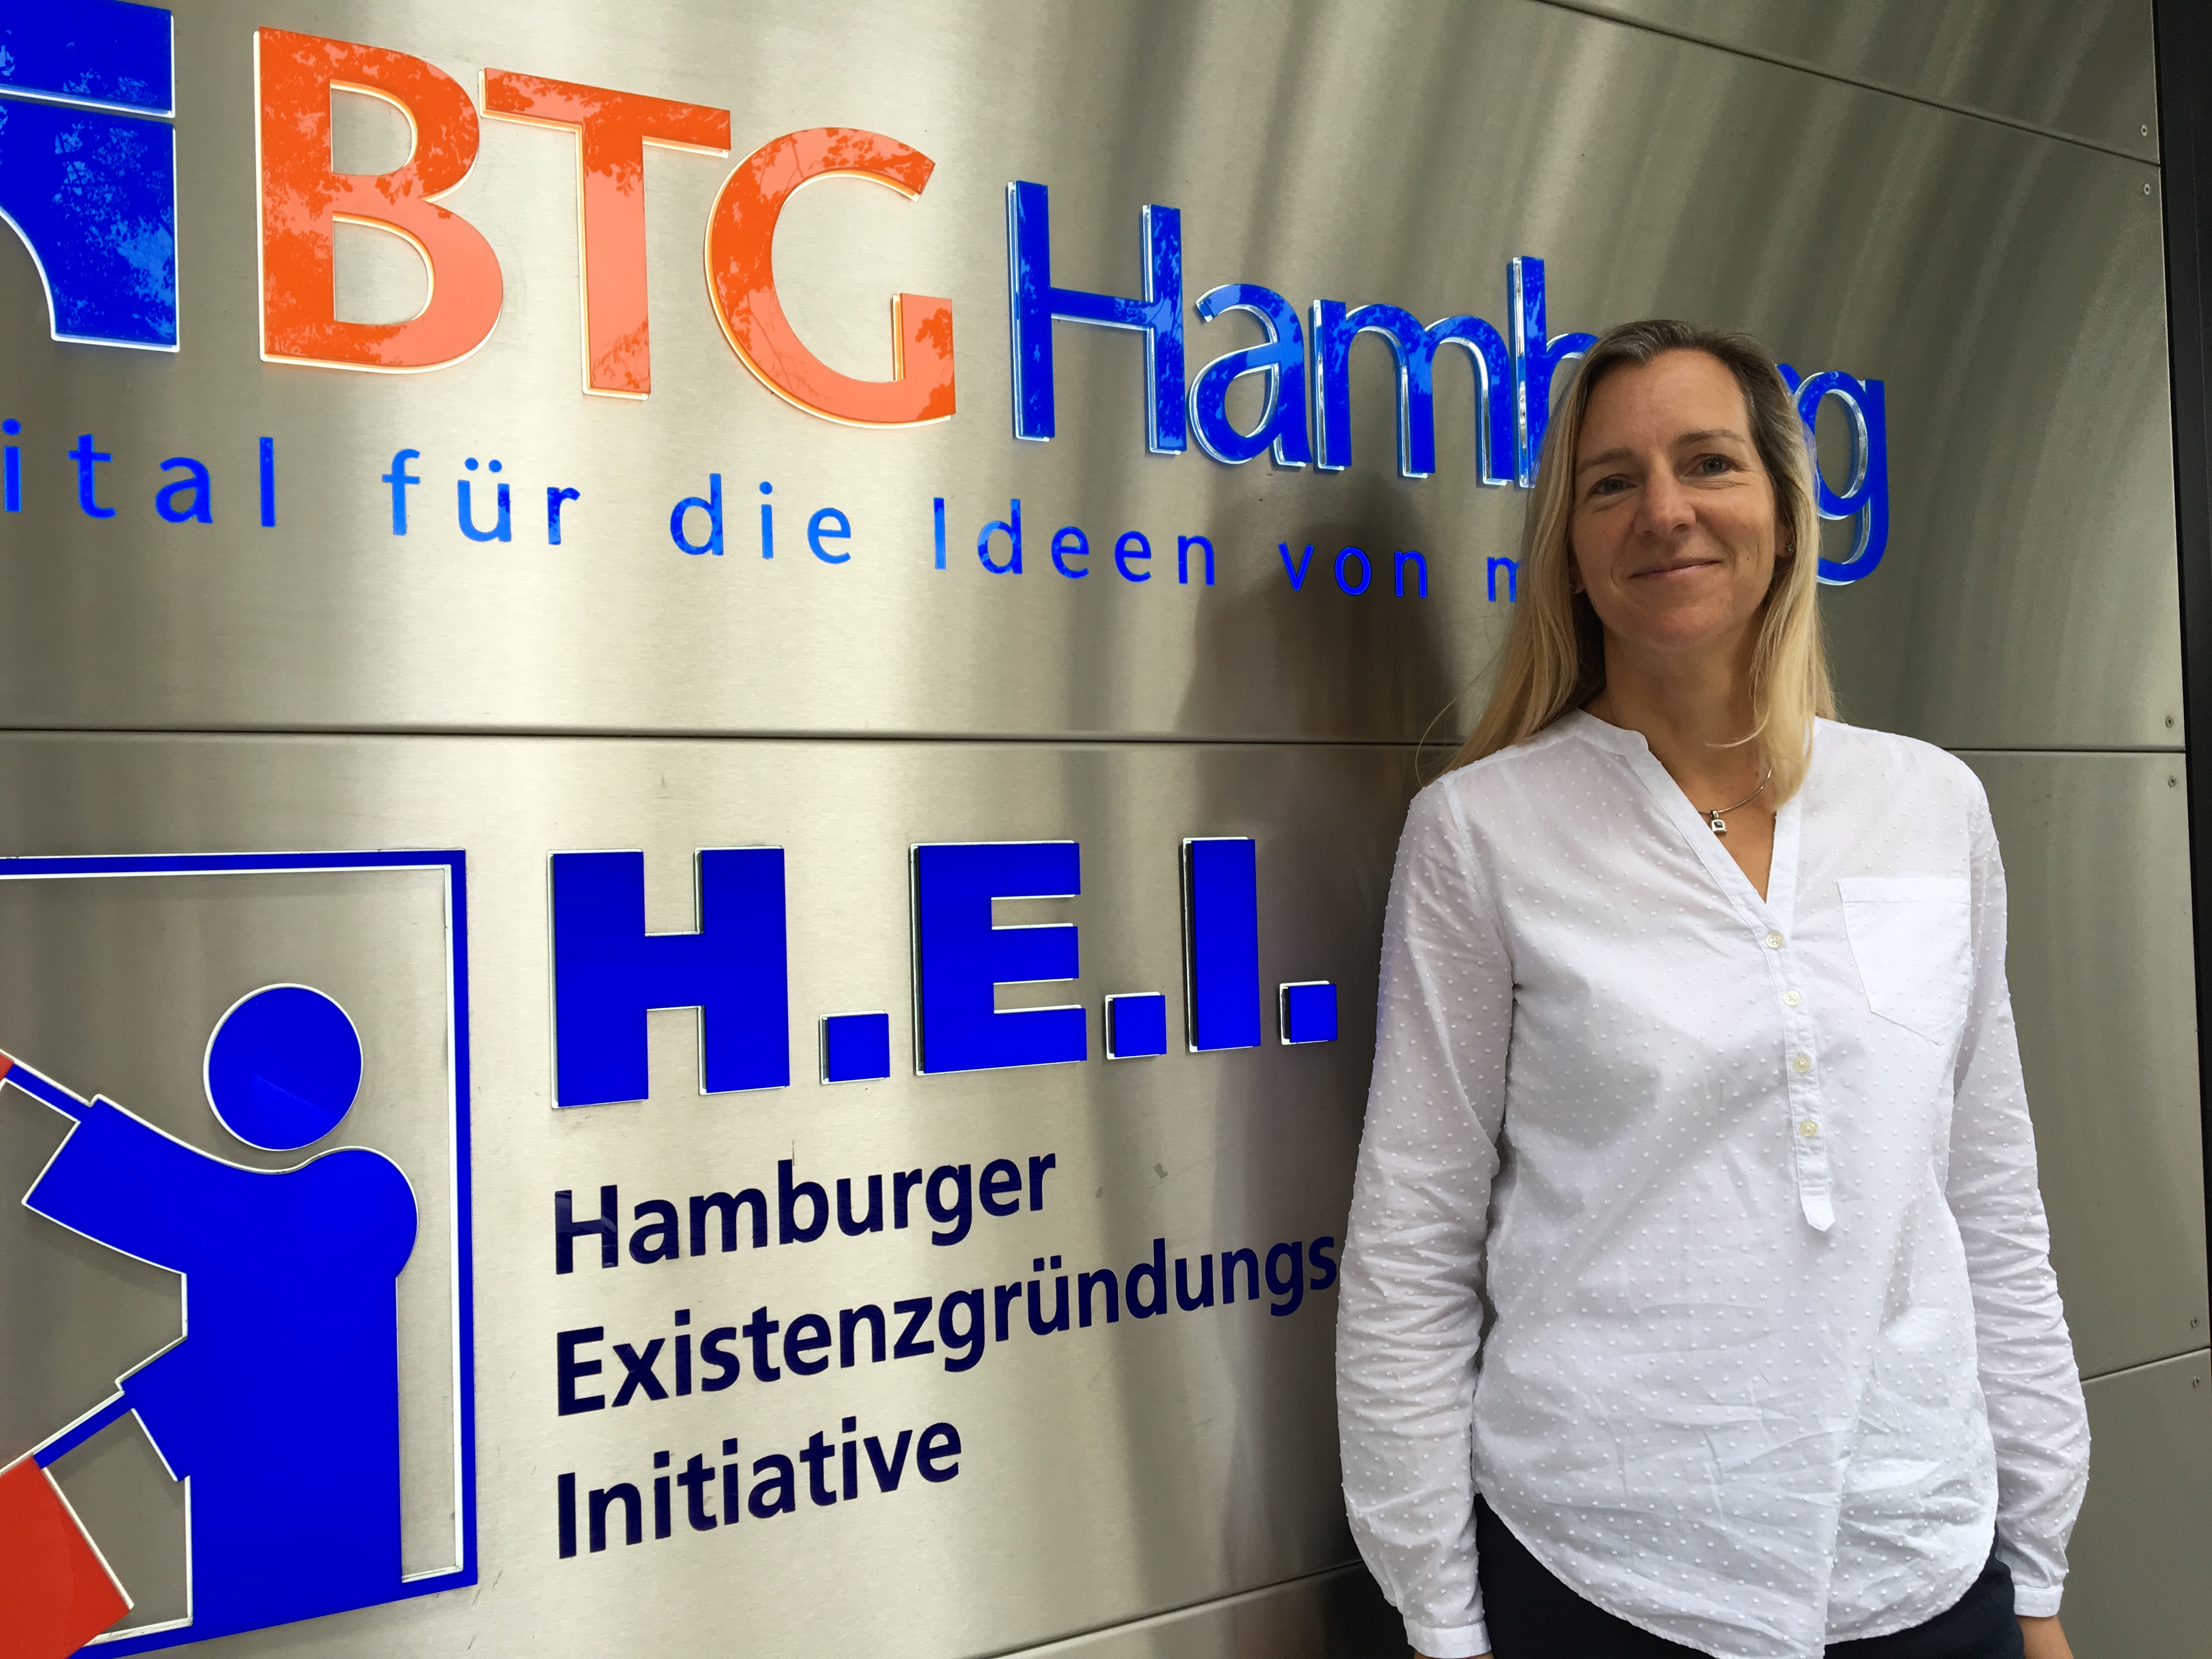 Die Motivation und Leidenschaft der Gründer beeindruckt Katja Schütt